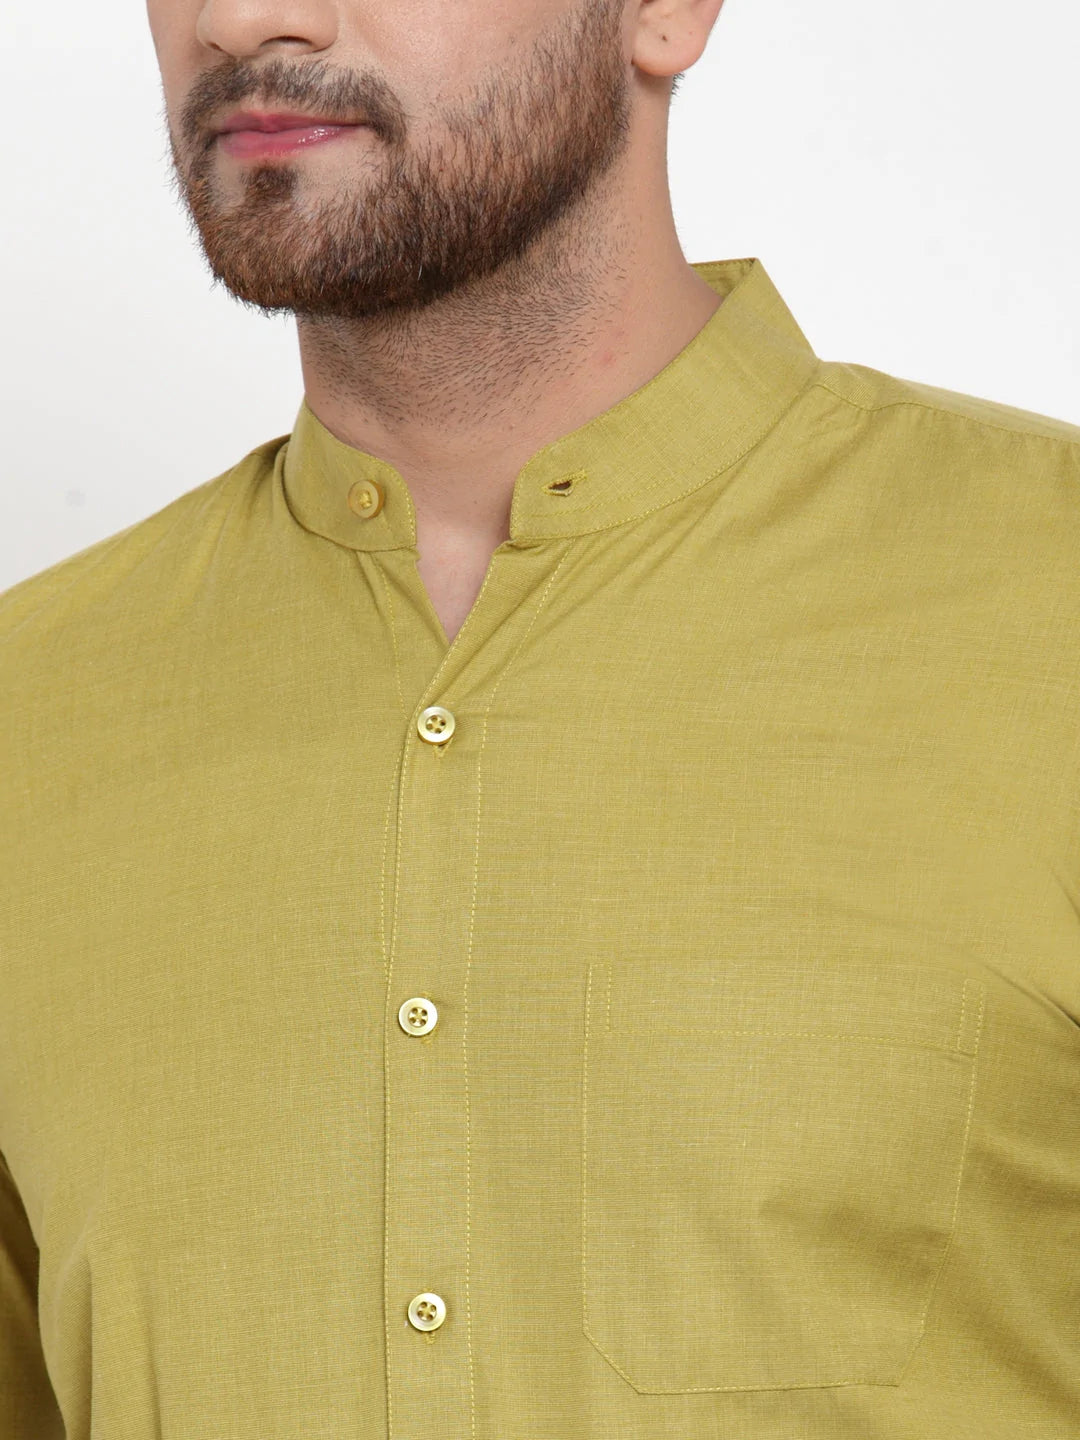 Jainish Green Men's Cotton Solid Mandarin Collar Formal Shirts ( SF 757Mehndi )